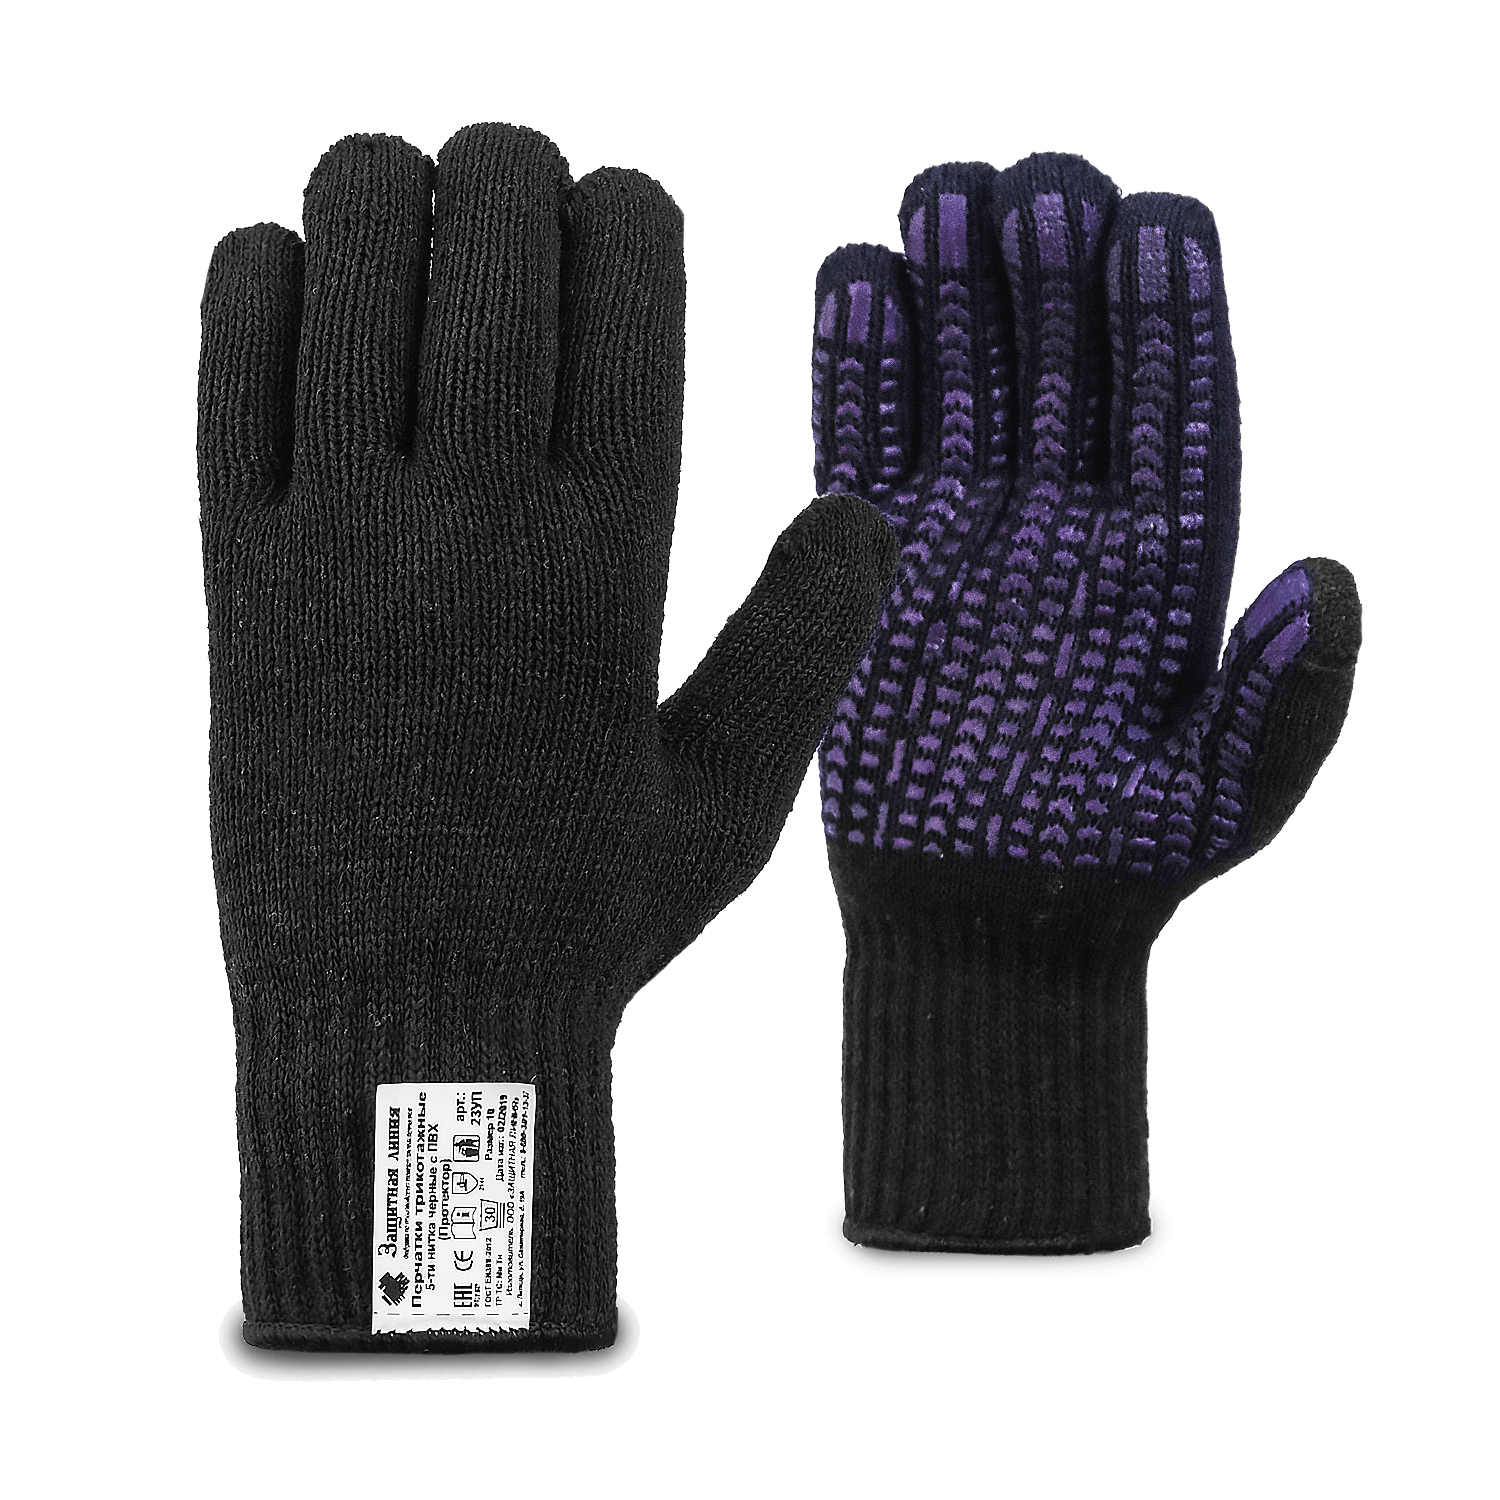 Рабочие перчатки трикотажные черные с ПВХ (протектор), 5-нитей, 7,5 класс, по ГОСТ с маркировкой